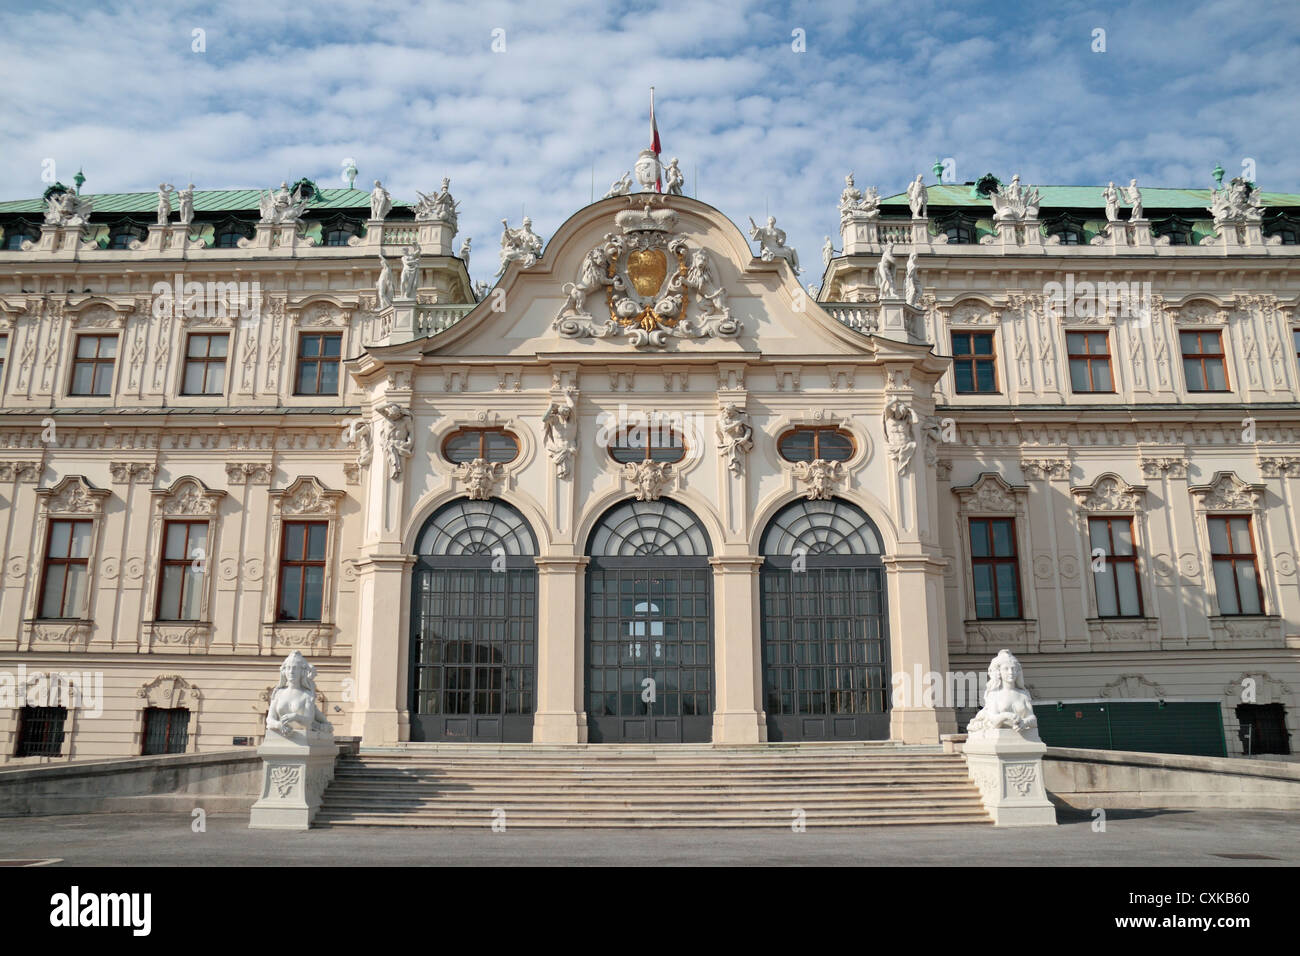 Ingresso al Belvedere superiore () Oberes Belvedere, Vienna (Vienna), Austria. Foto Stock